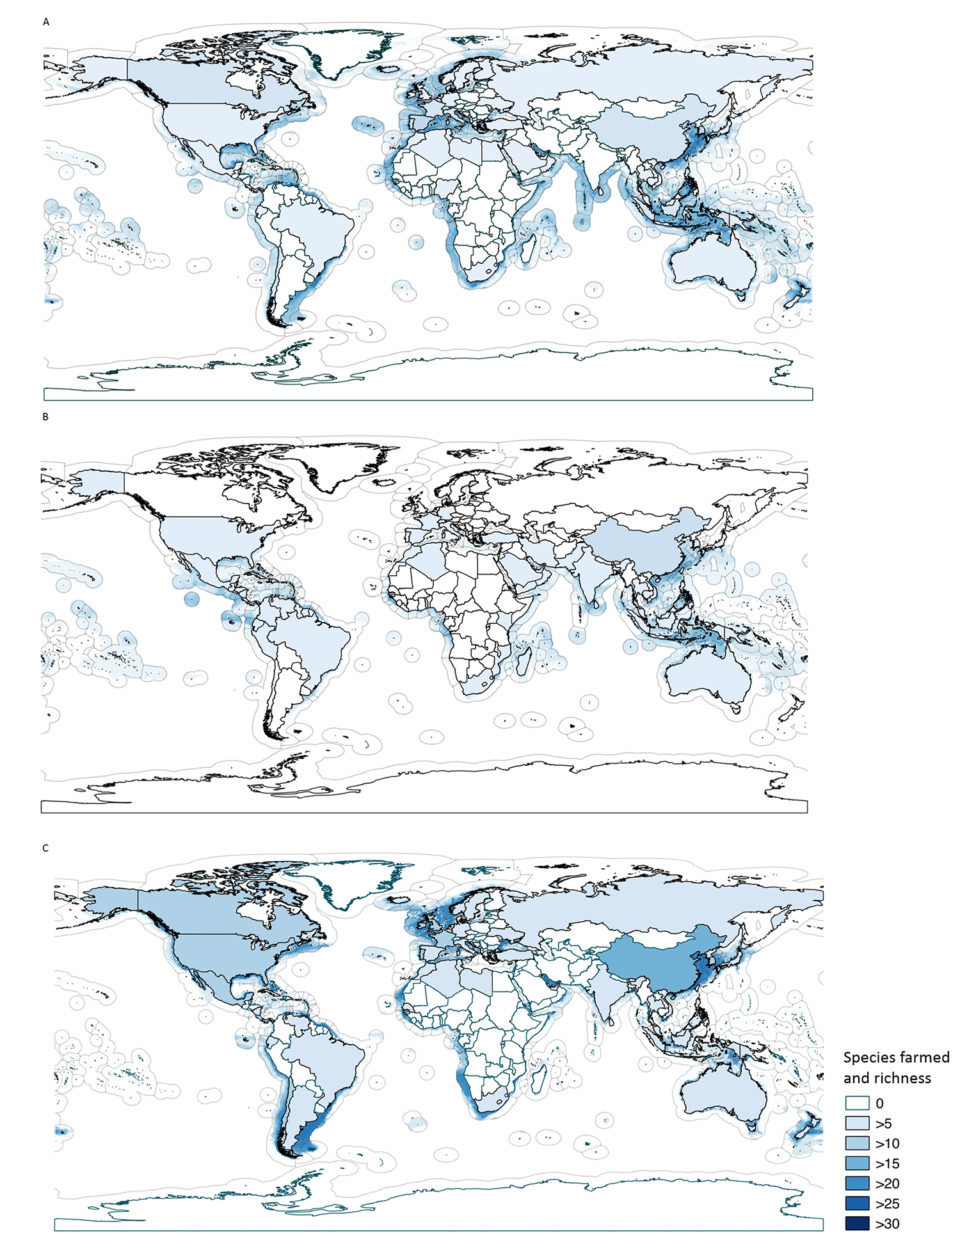 Fig. 3: Área de maricultura potencial global predicha y riqueza regional de especies cultivadas para (A) peces (66 millones de kilómetros cuadrados); (A) crustáceos (39 millones de kilómetros cuadrados); y (C) moluscos (31 millones de kilómetros cuadrados). Modificado del original en https://doi.org/10.1371/journal.pone.0191086.g007.